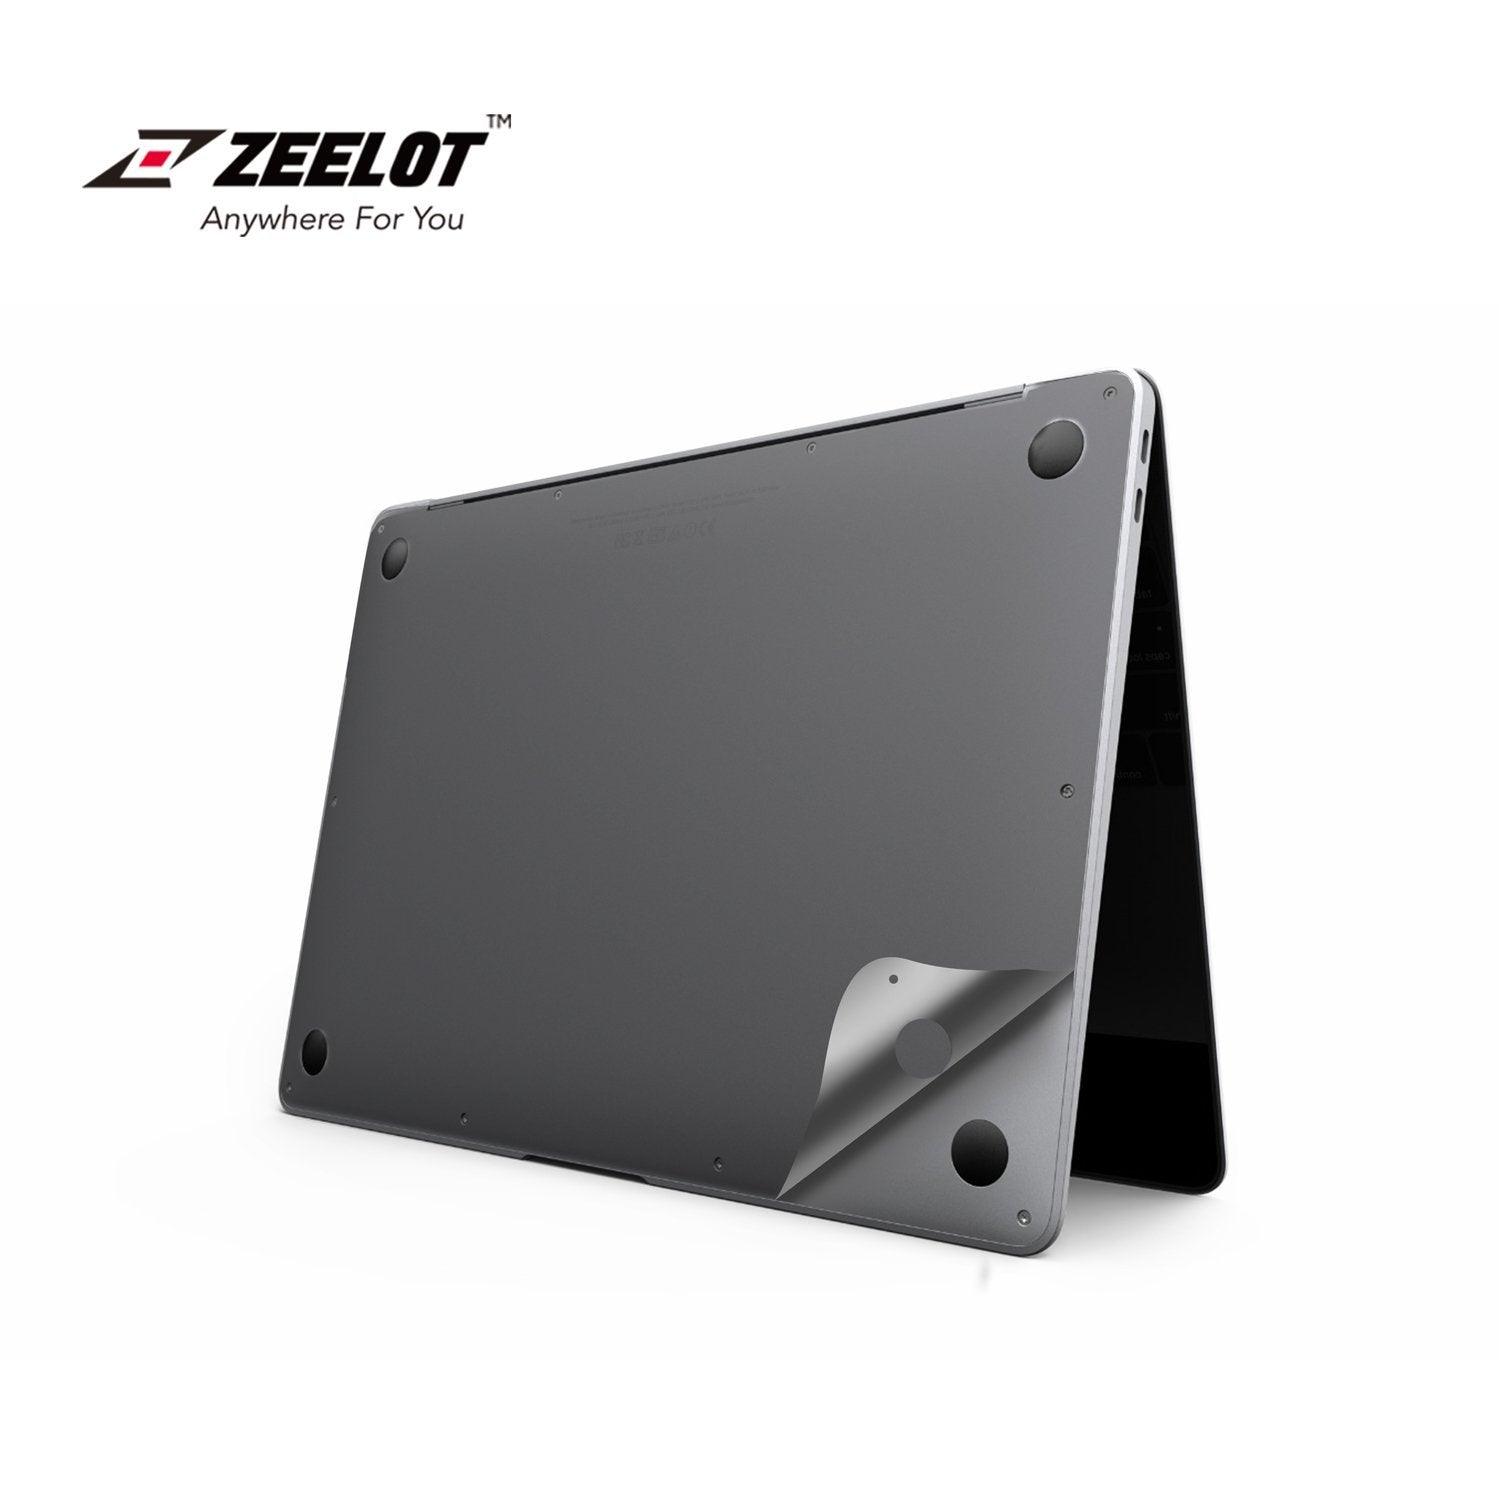 ZEELOT 6 in 1 Full Body Guard for MacBook Air 13'' (2020), Space Gray Default ZEELOT 